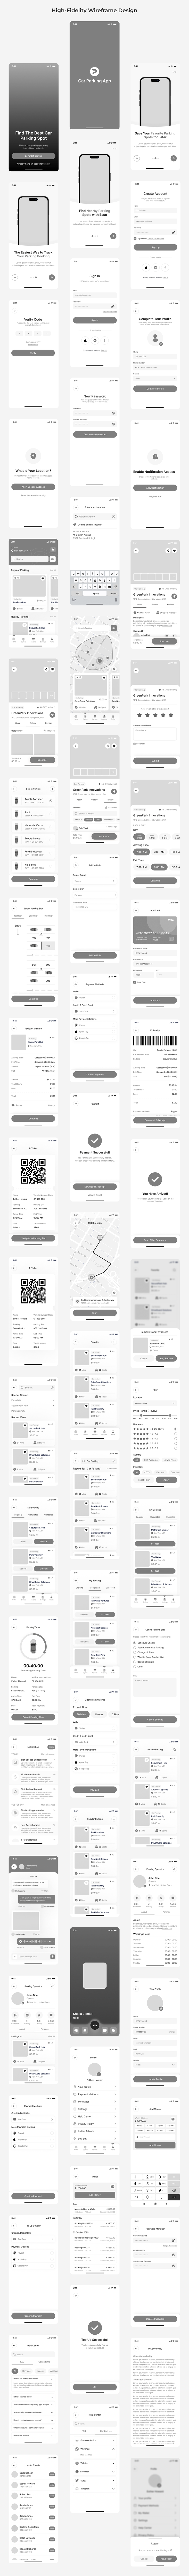 Parking App UI Design